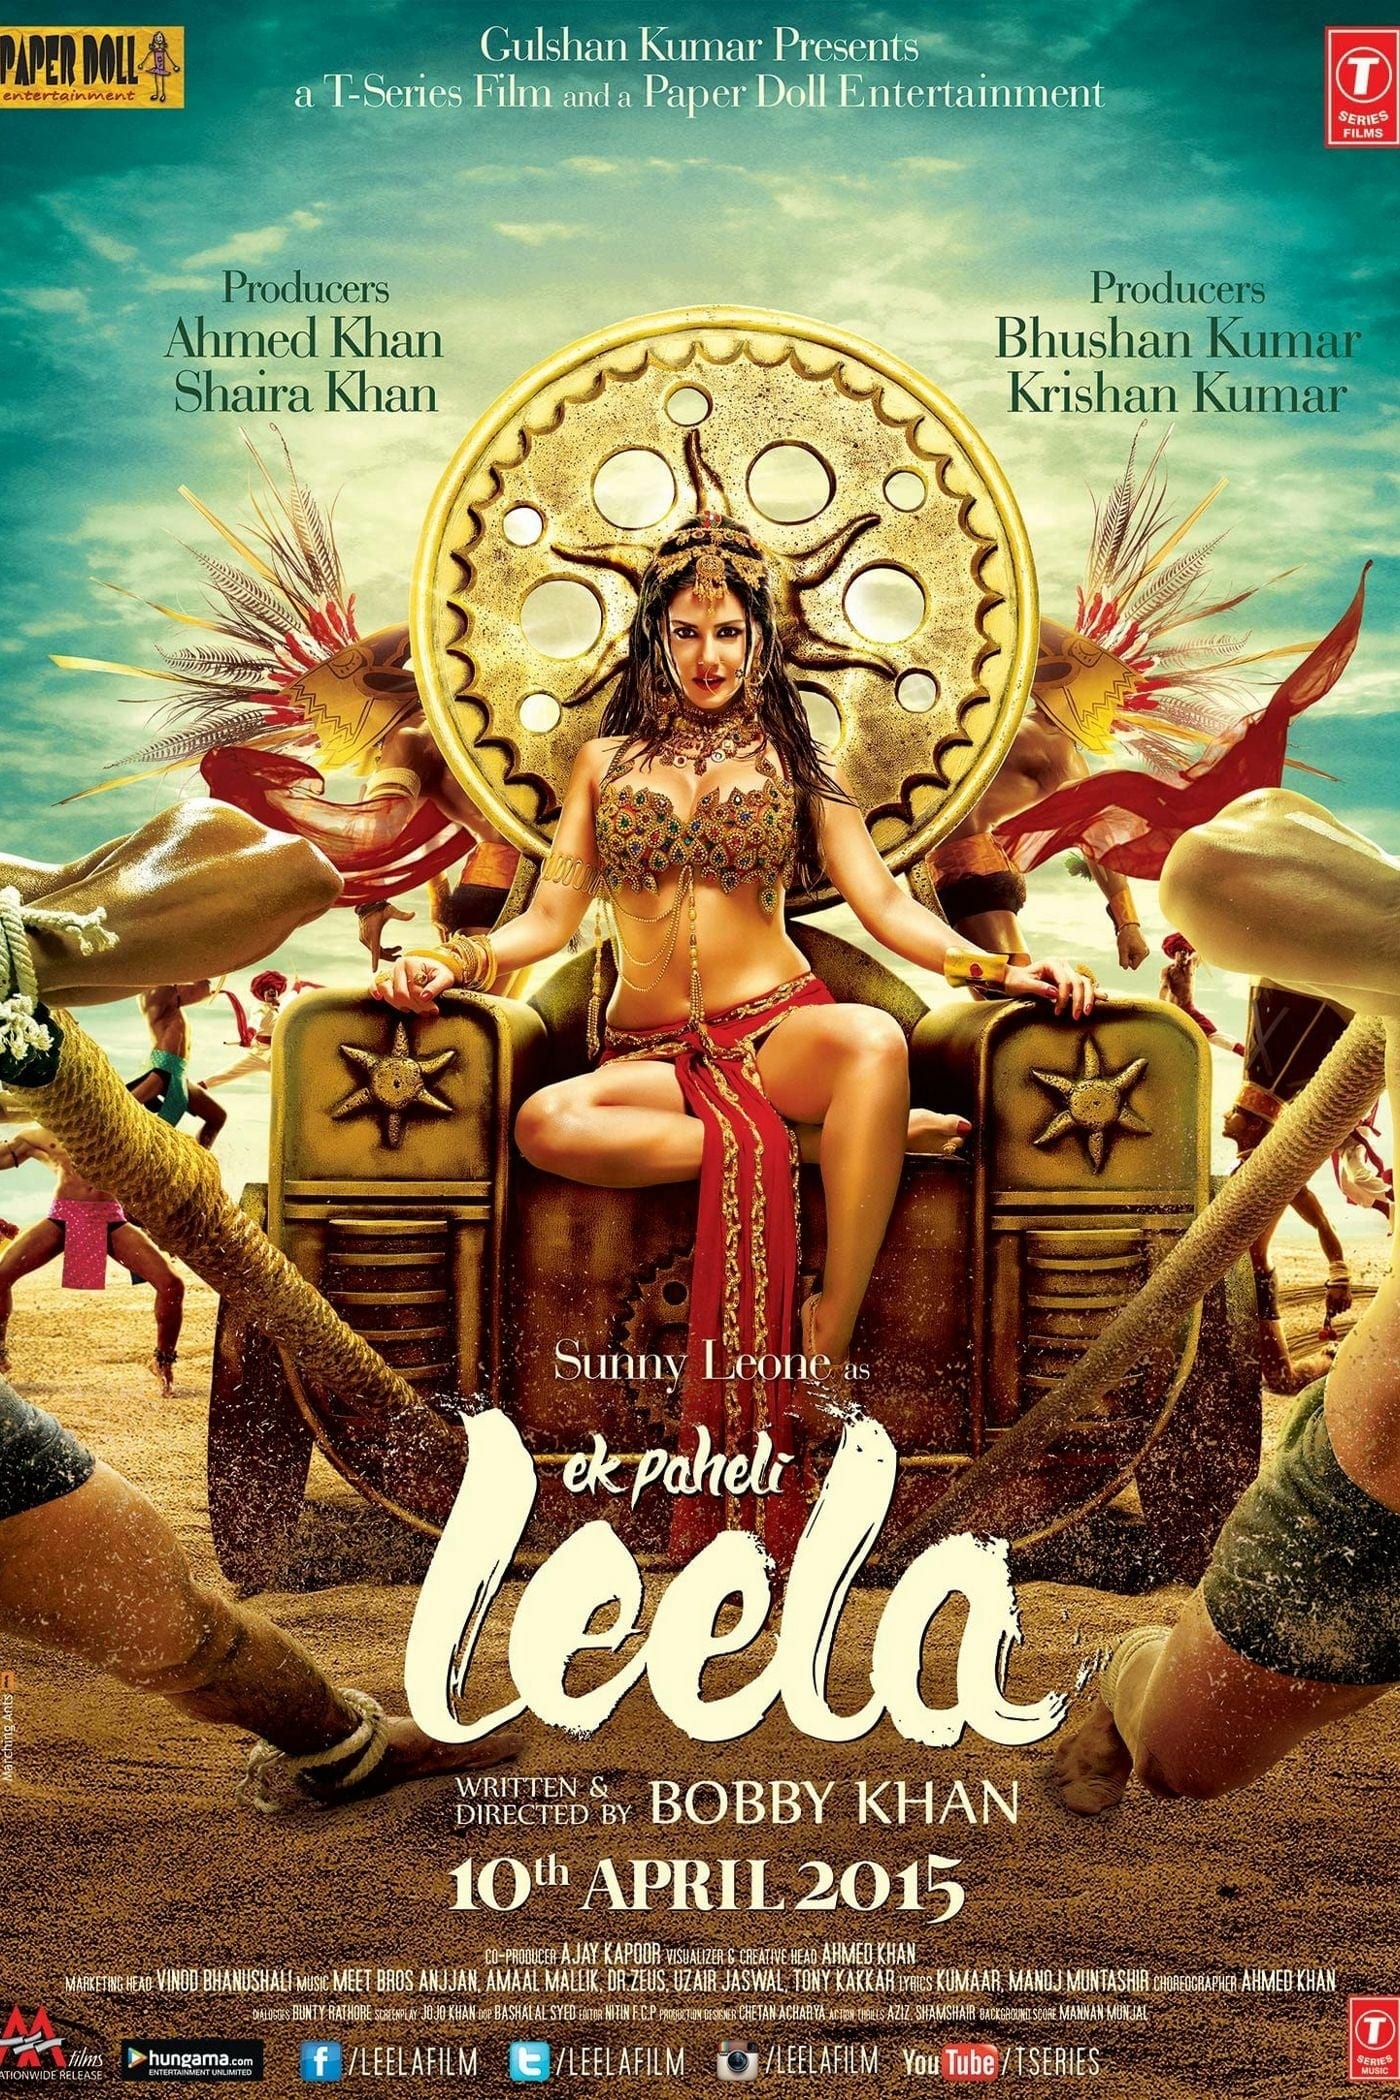 Poster for the movie "Ek Paheli Leela"